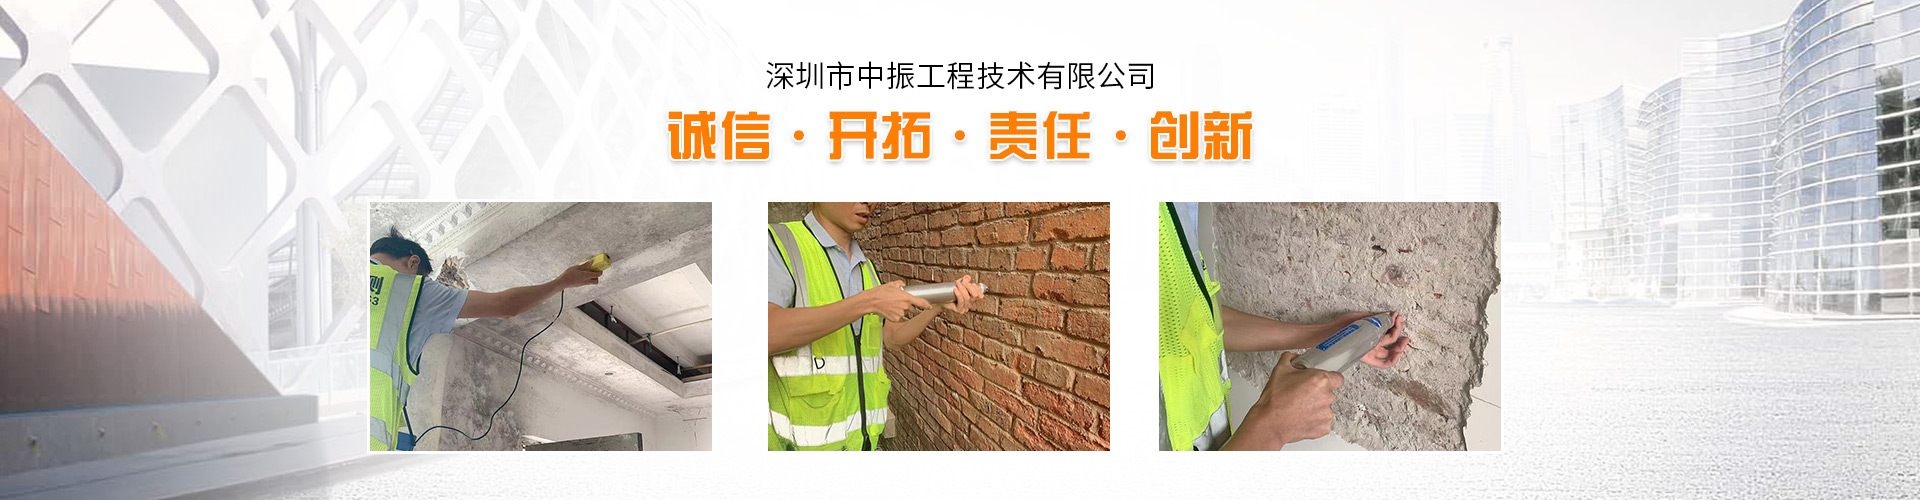 深圳房屋安全检测单位_建筑房屋检测鉴定